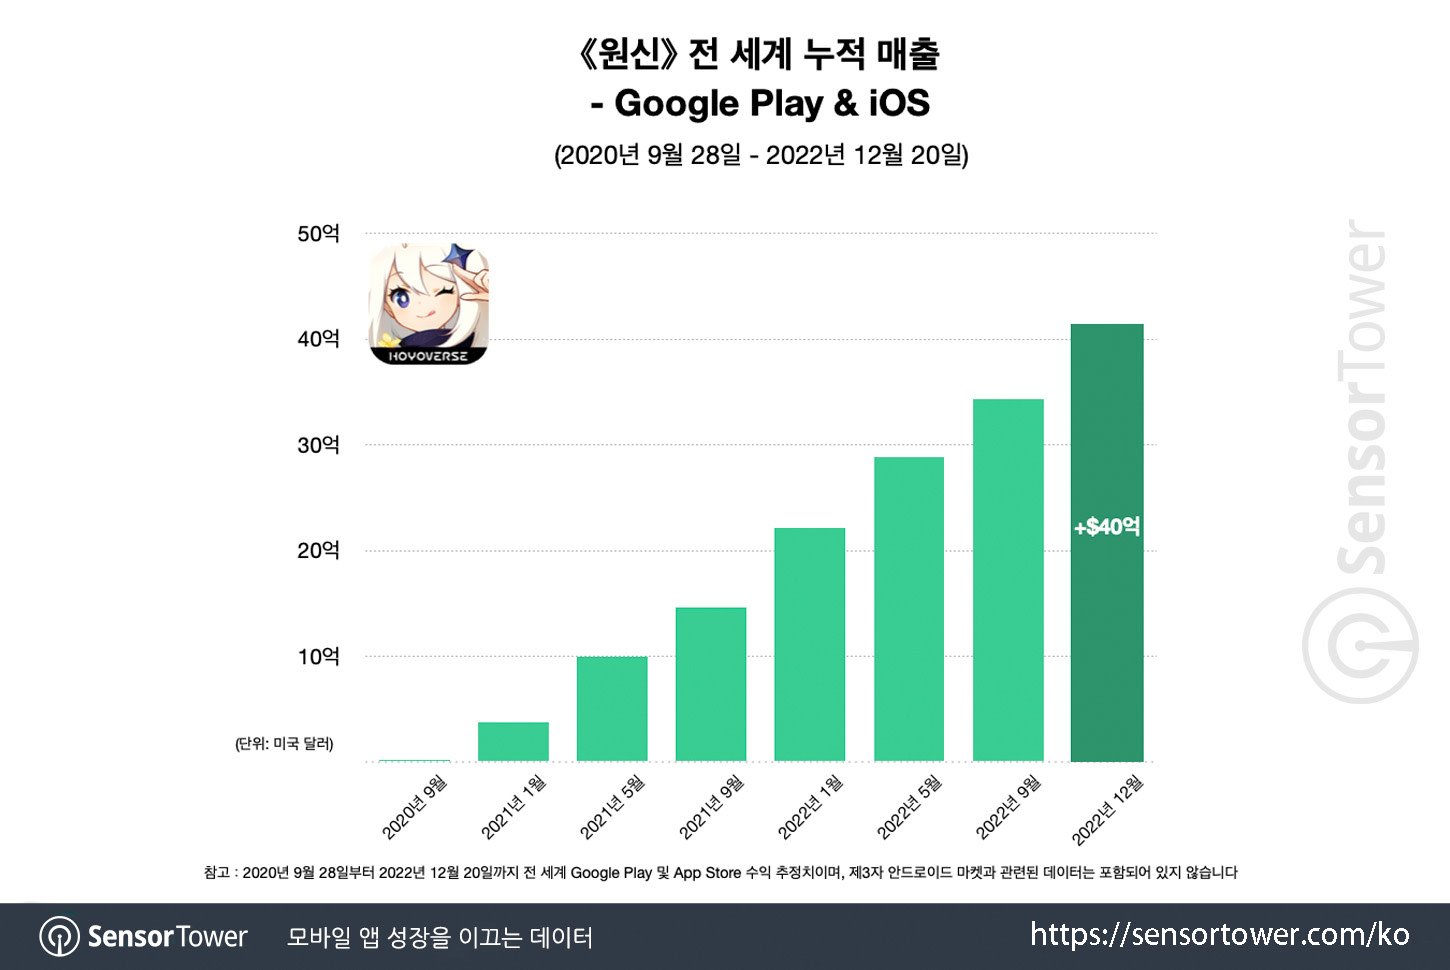 《原神》全球总收益达40亿美元 中日美韩为主要市场 二次世界 第2张